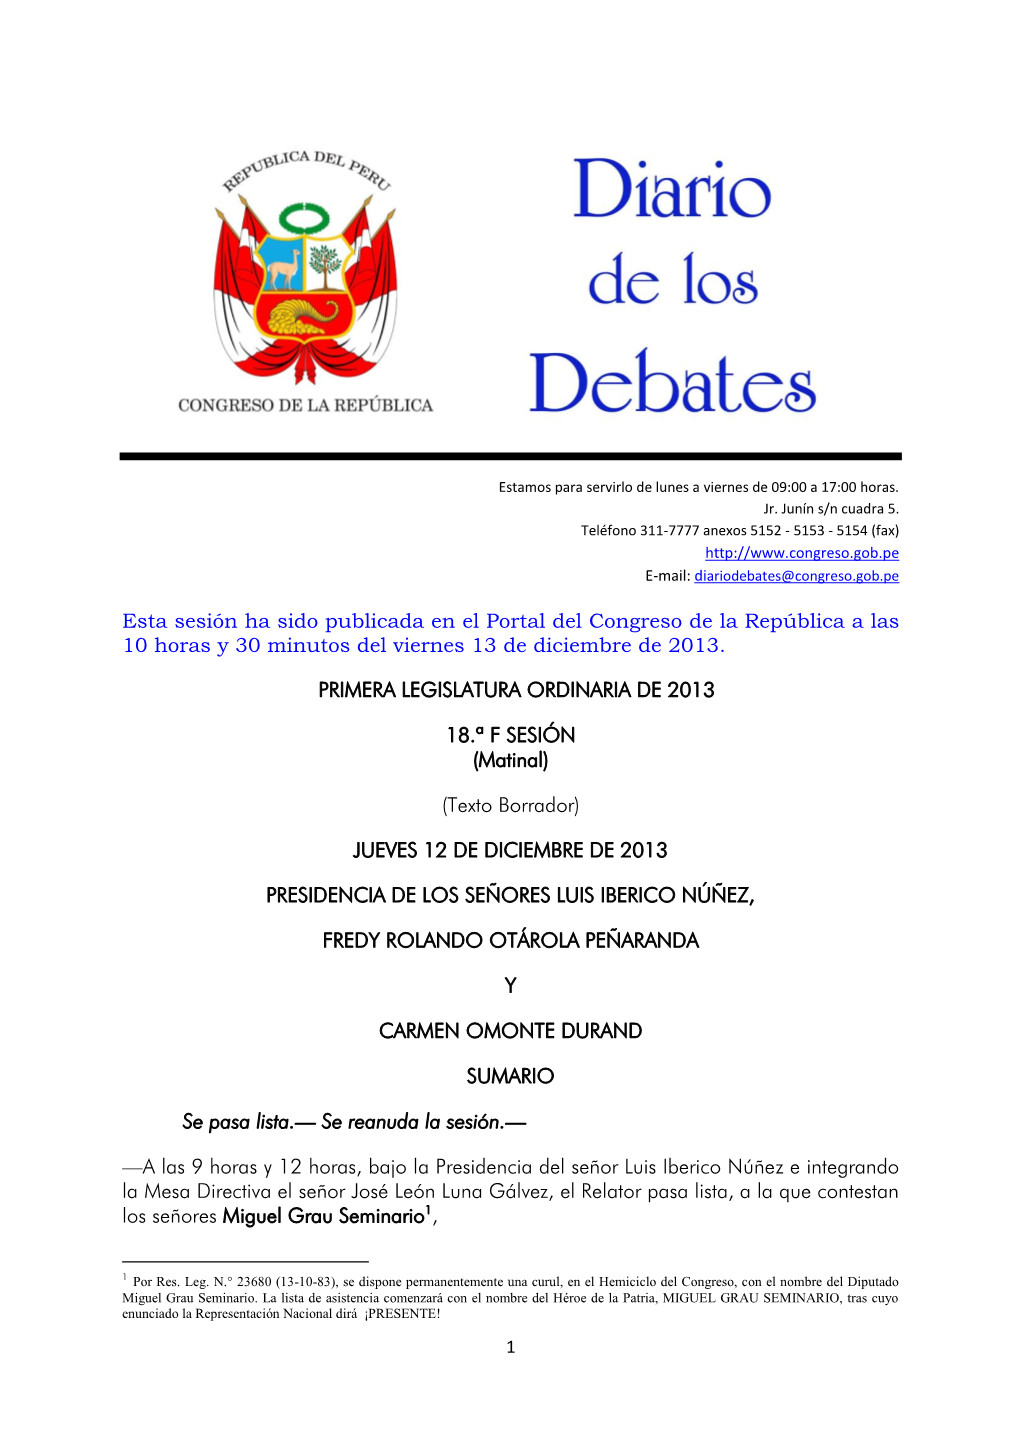 Esta Sesión Ha Sido Publicada En El Portal Del Congreso De La República a Las 10 Horas Y 30 Minutos Del Viernes 13 De Diciembre De 2013